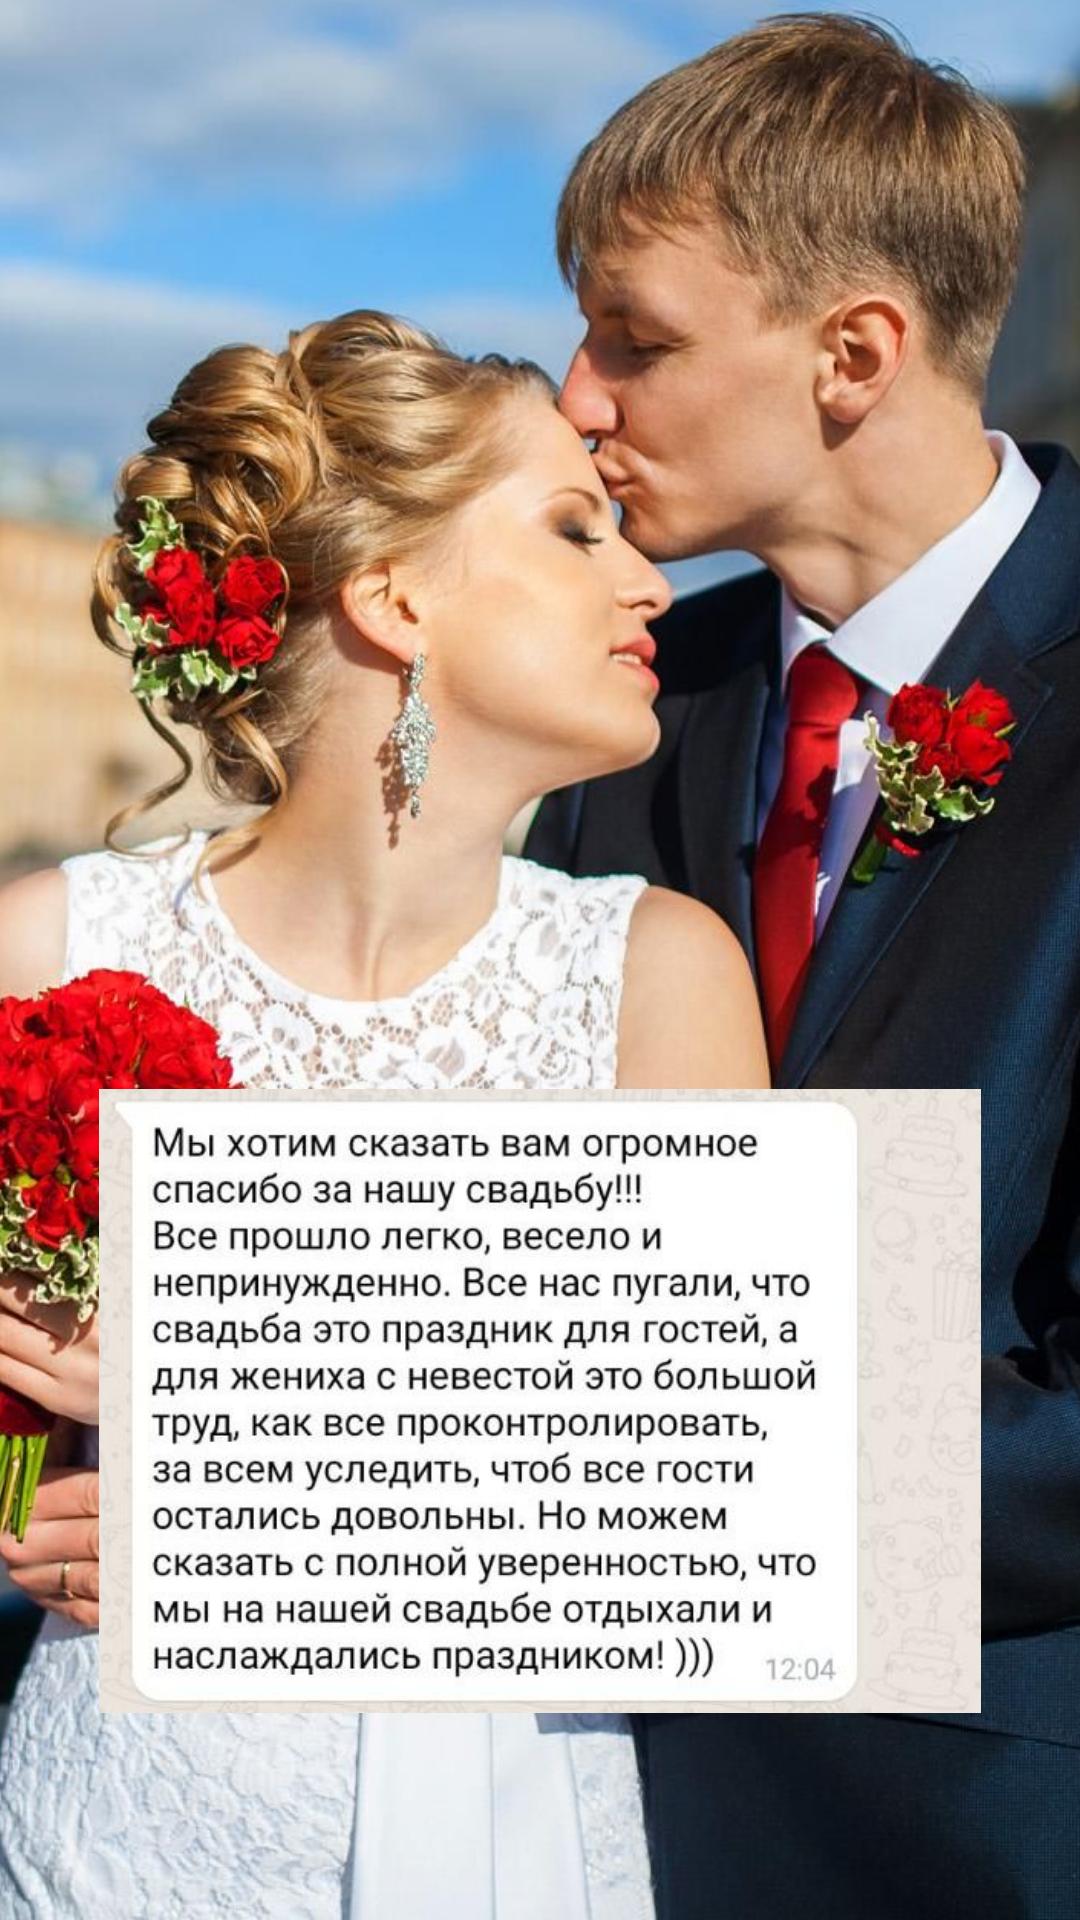 Организация свадьбы в Вологде
от компании Pandaevent